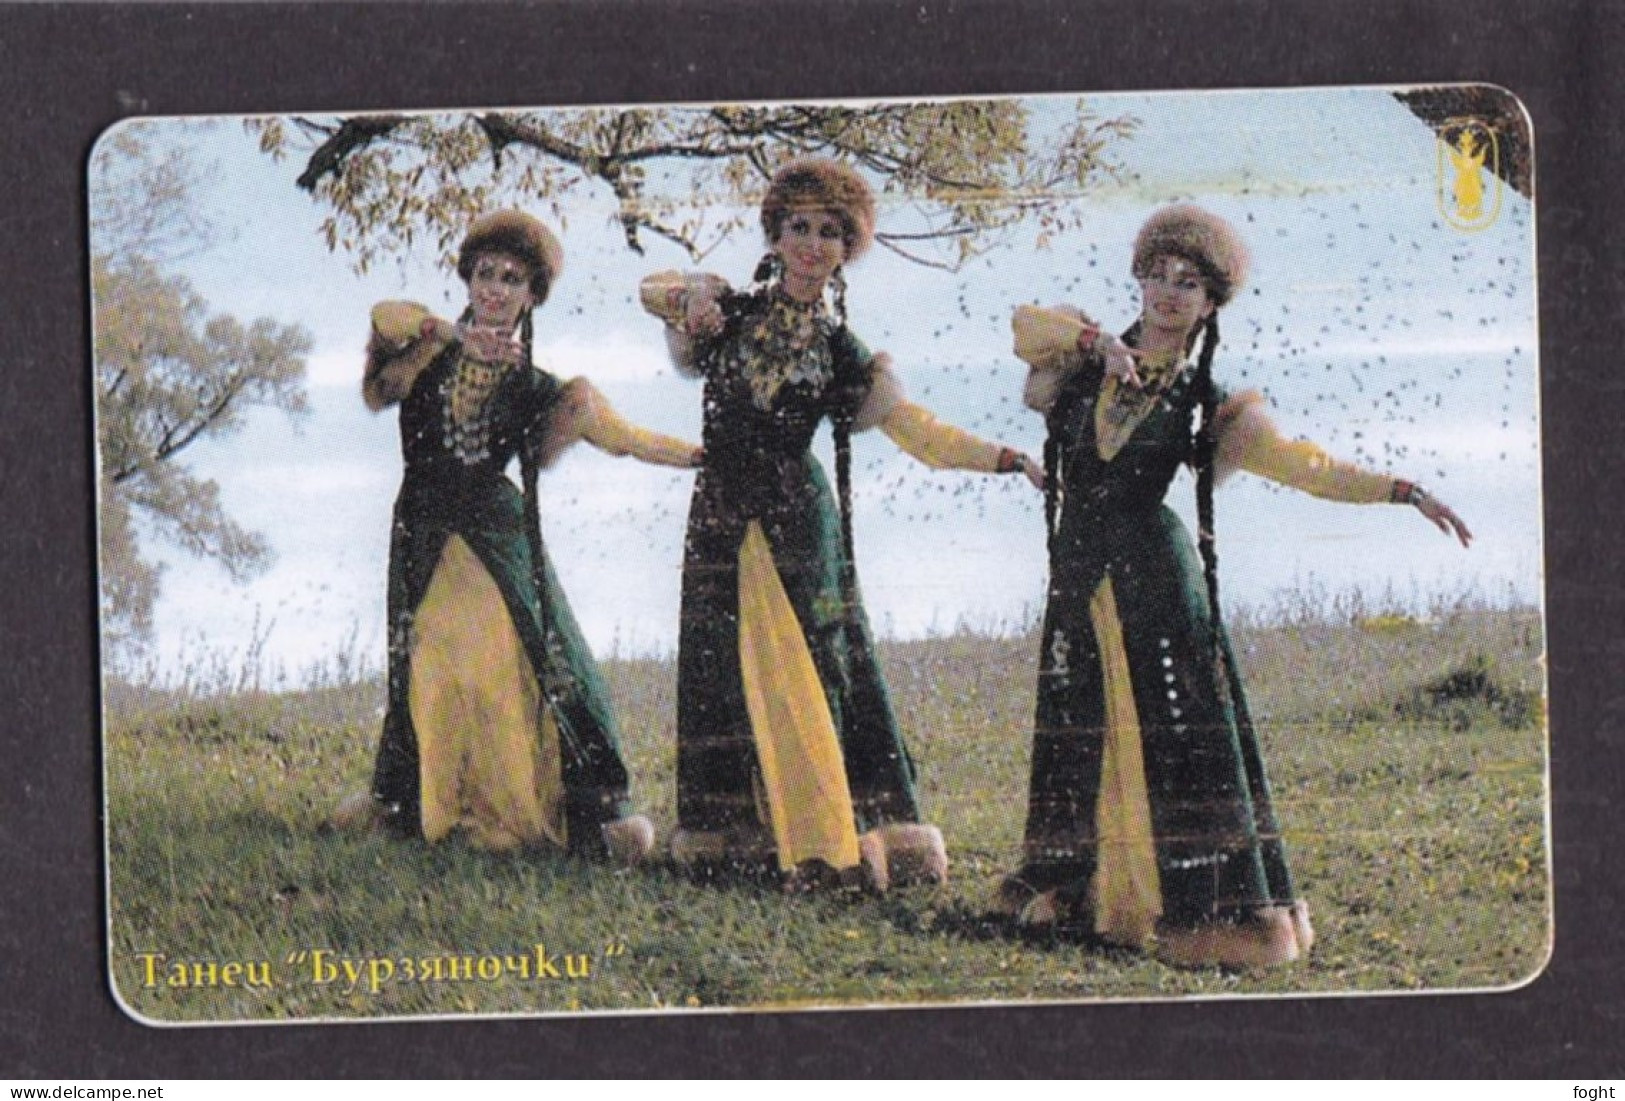 2002 Russia Bashinformsvyaz-Ufa,Dance "Byrzyanochki",90 Units Card,Col:RU-BIS-V-008A - Rusia